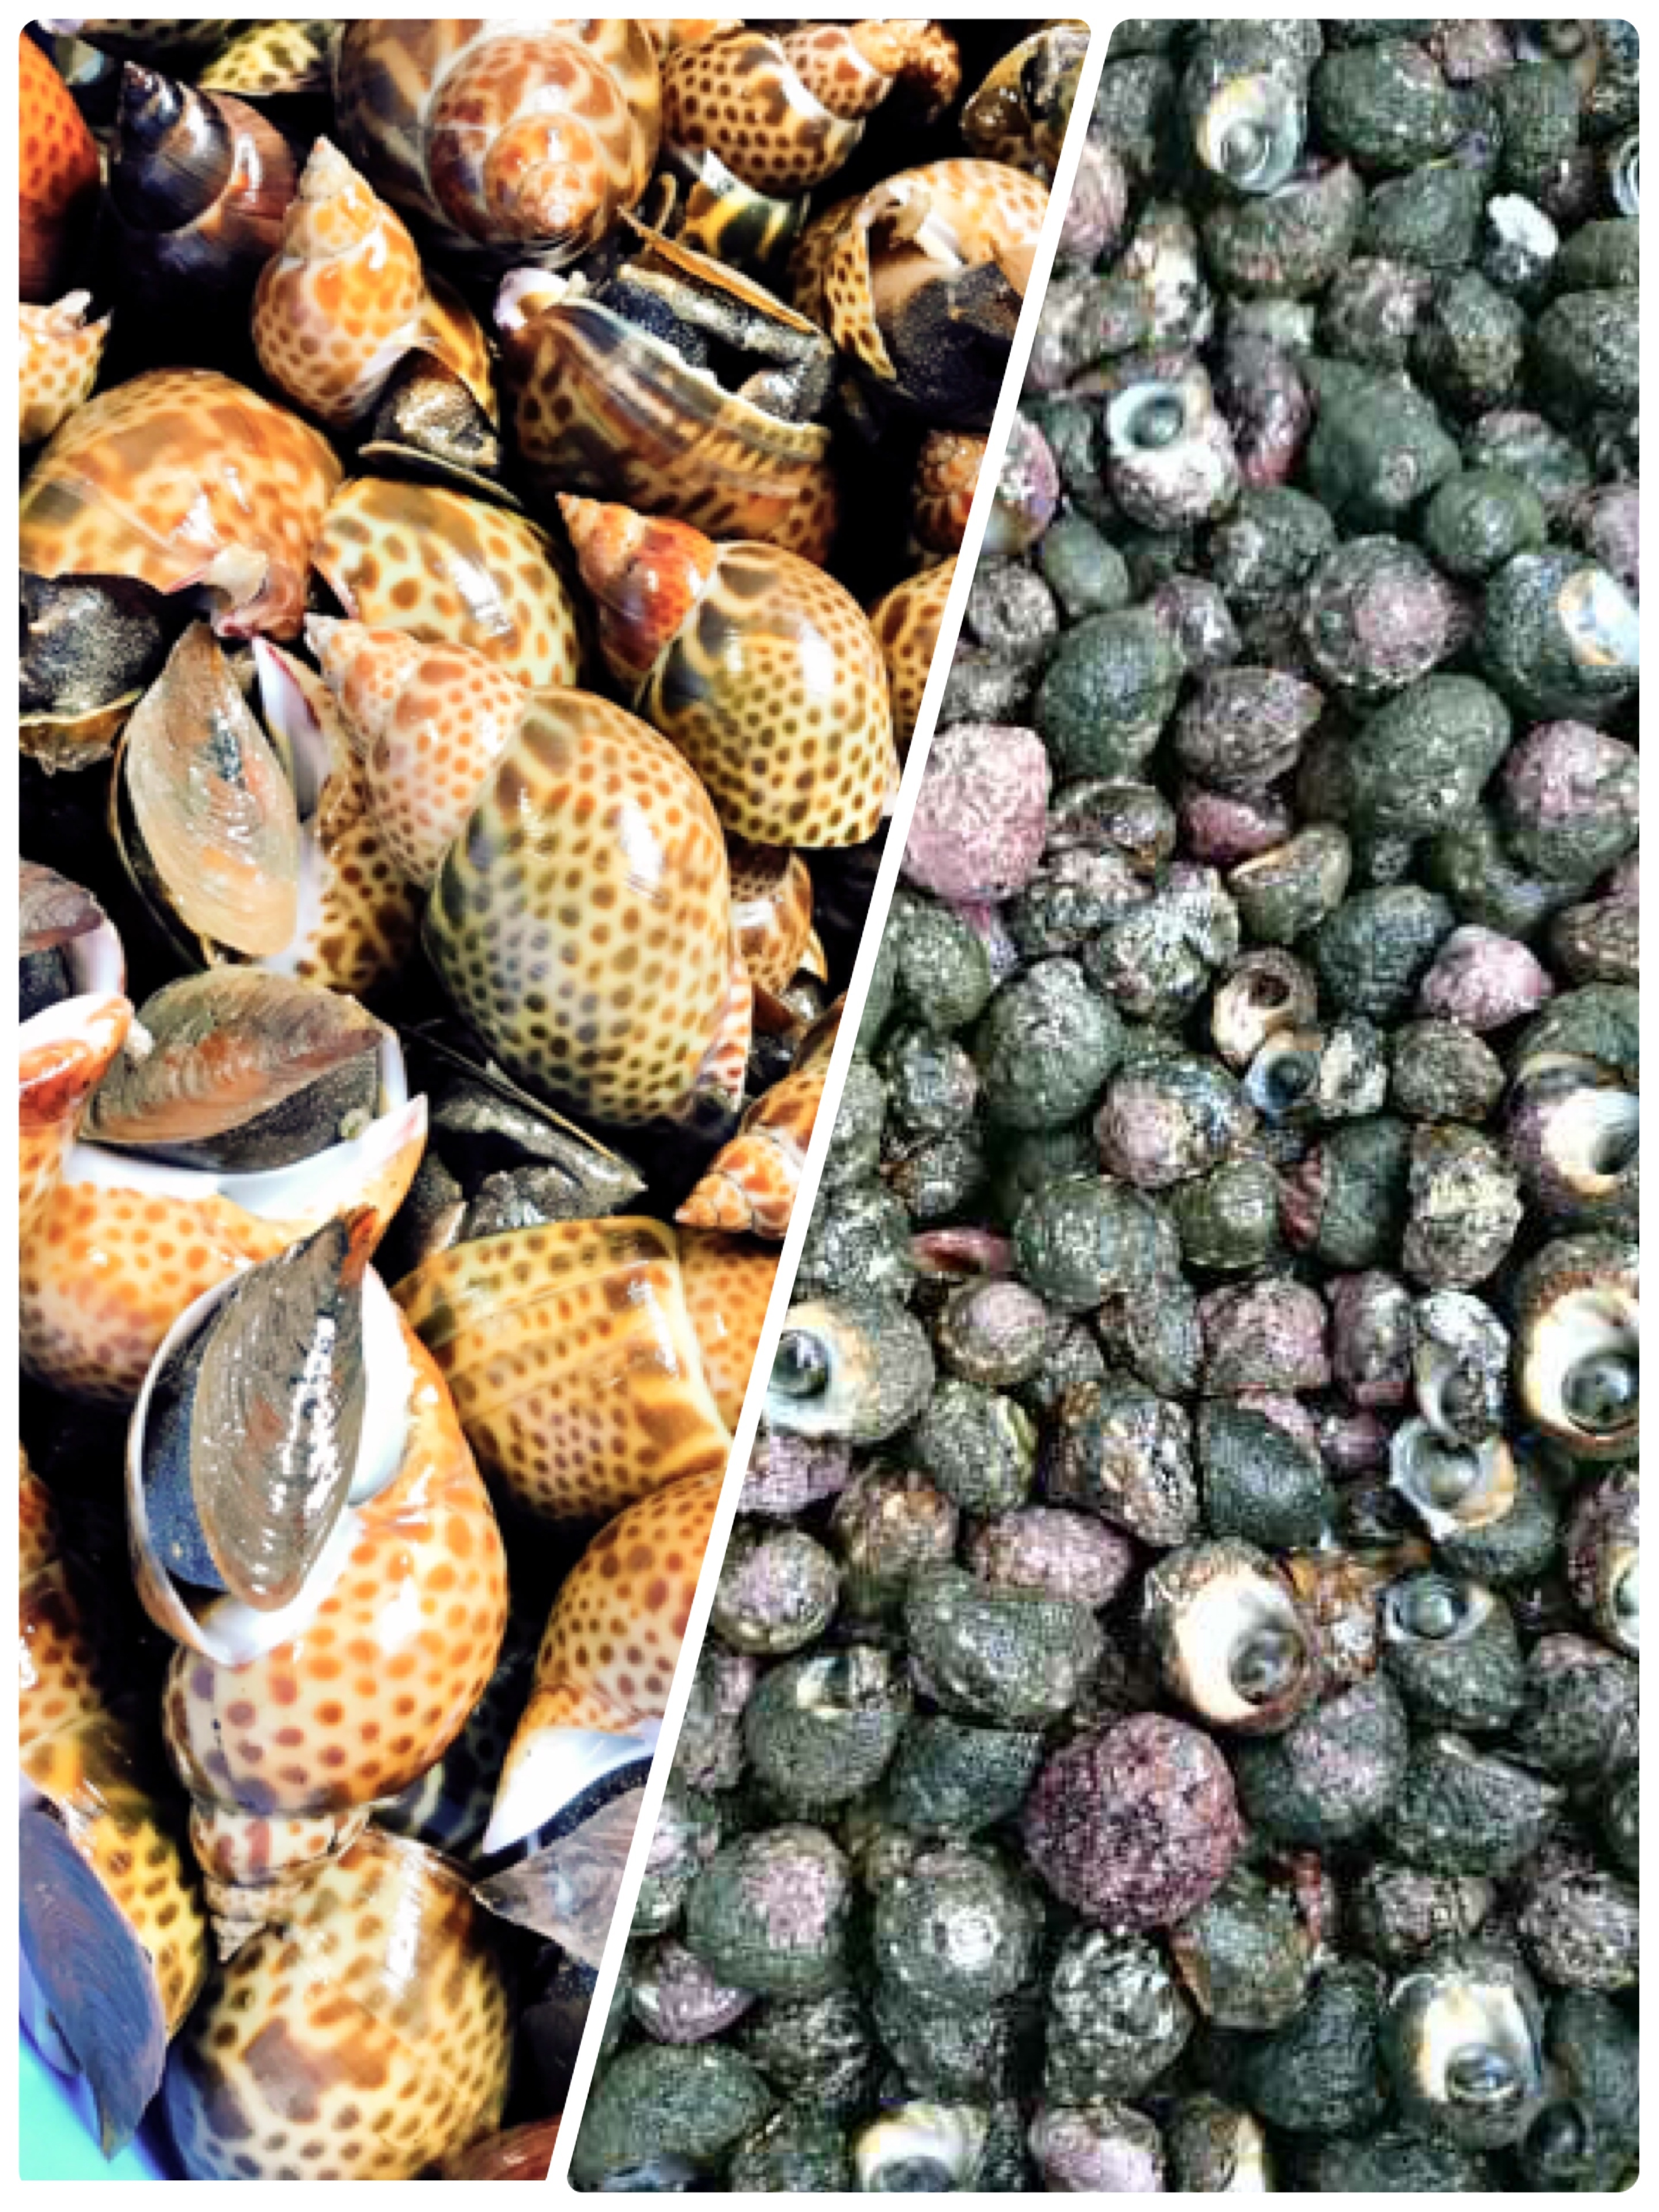 欲張りさん寄っておいで バイ貝とビナ貝の食べ比べ 農家漁師から産地直送の通販 ポケットマルシェ